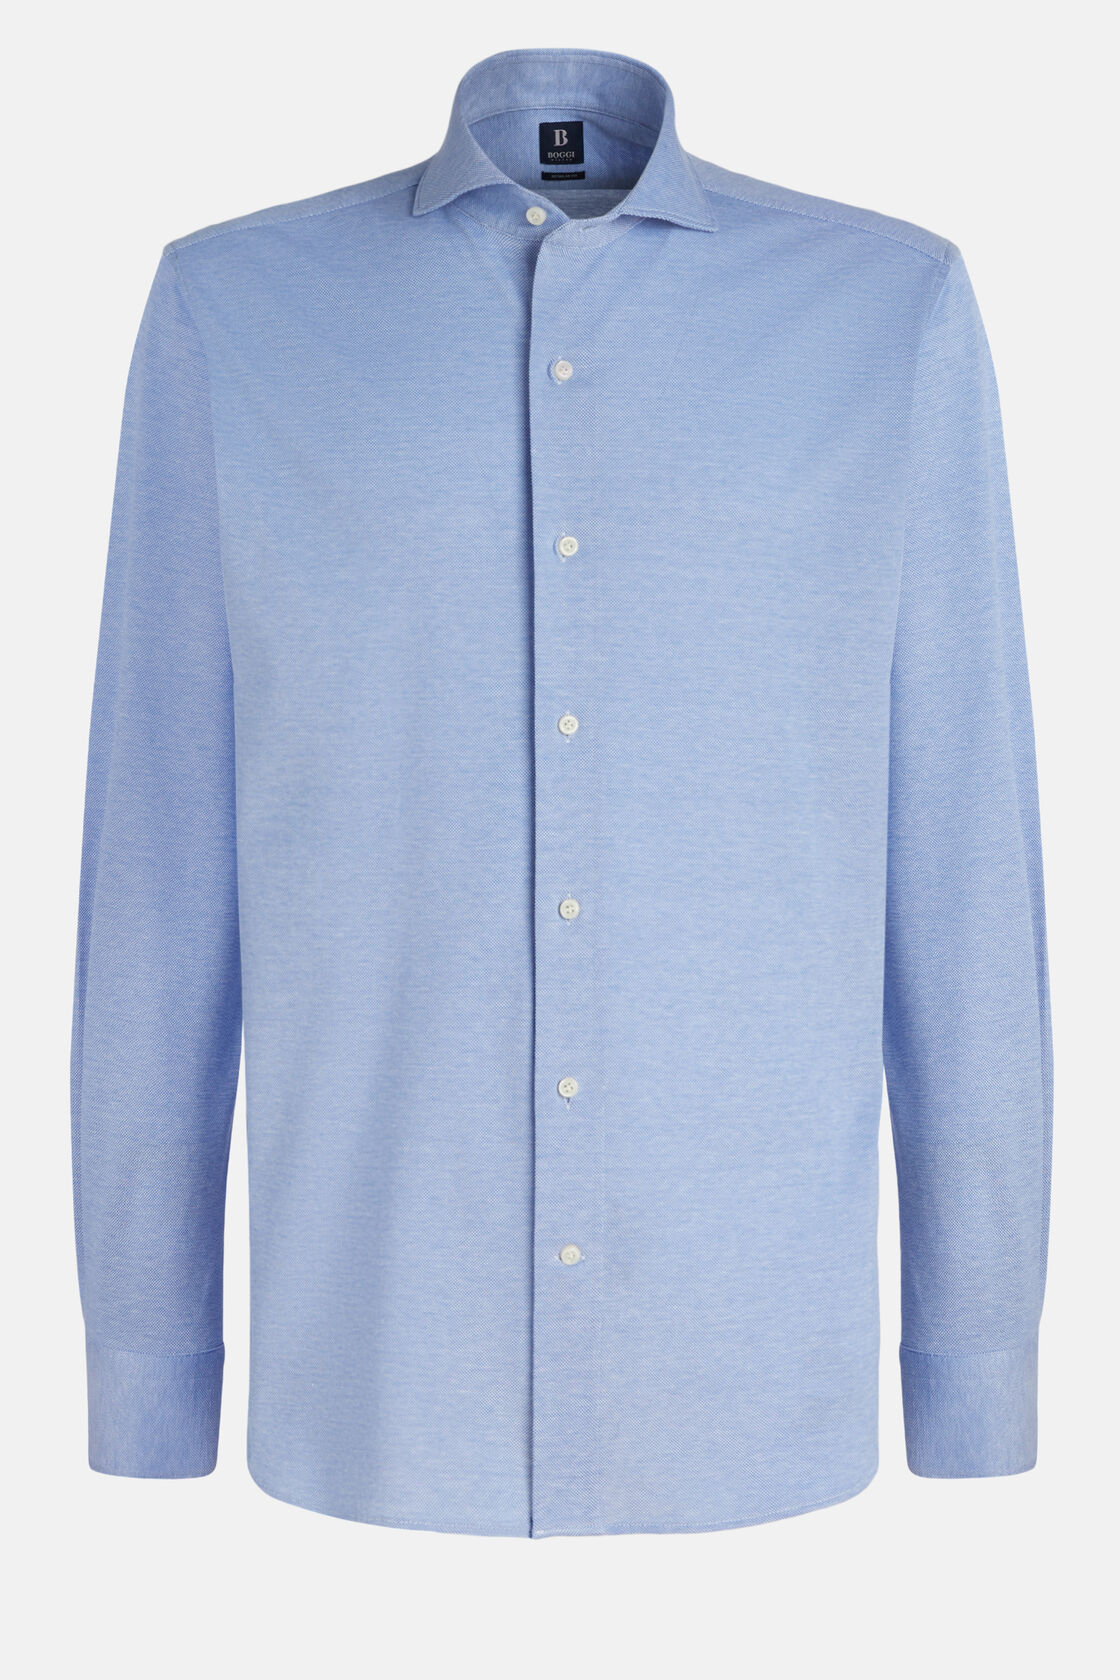 Polo shirt in piquet light blue cotton regular fit, Bleu clair, hi-res